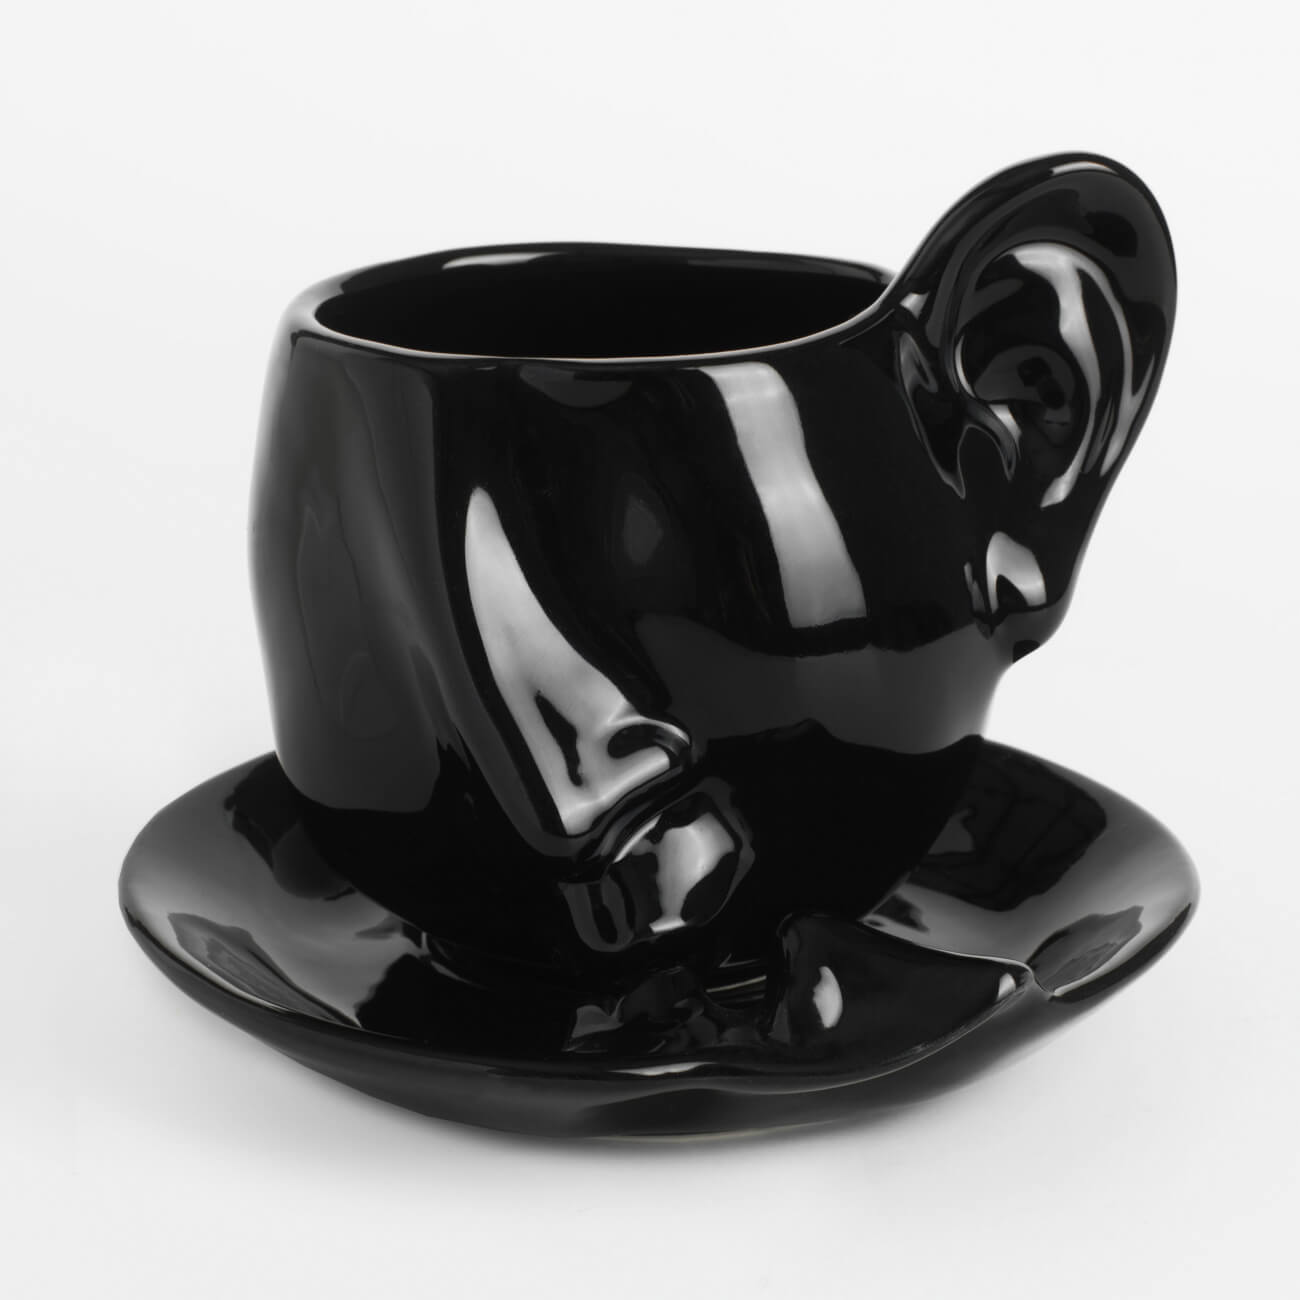 Пара чайная, 1 перс, 2 пр, 320 мл, керамика, черная, Поцелуй, Baise ложка чайная с гравировкой